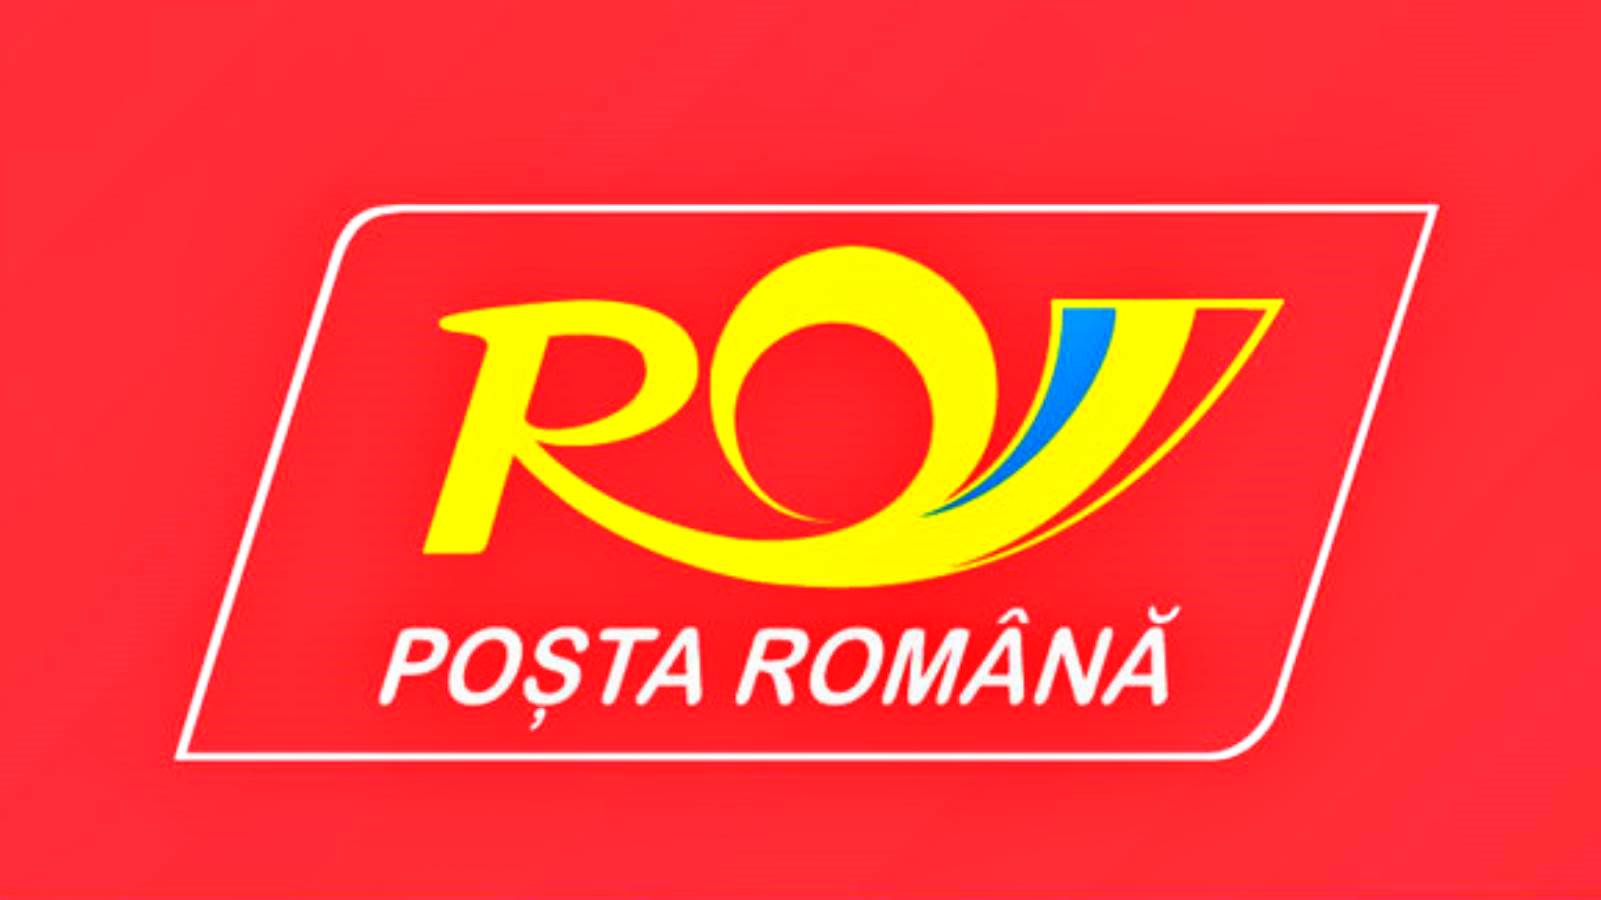 Roemeense postwaarschuwing over verboden voorwerpen in pakketten